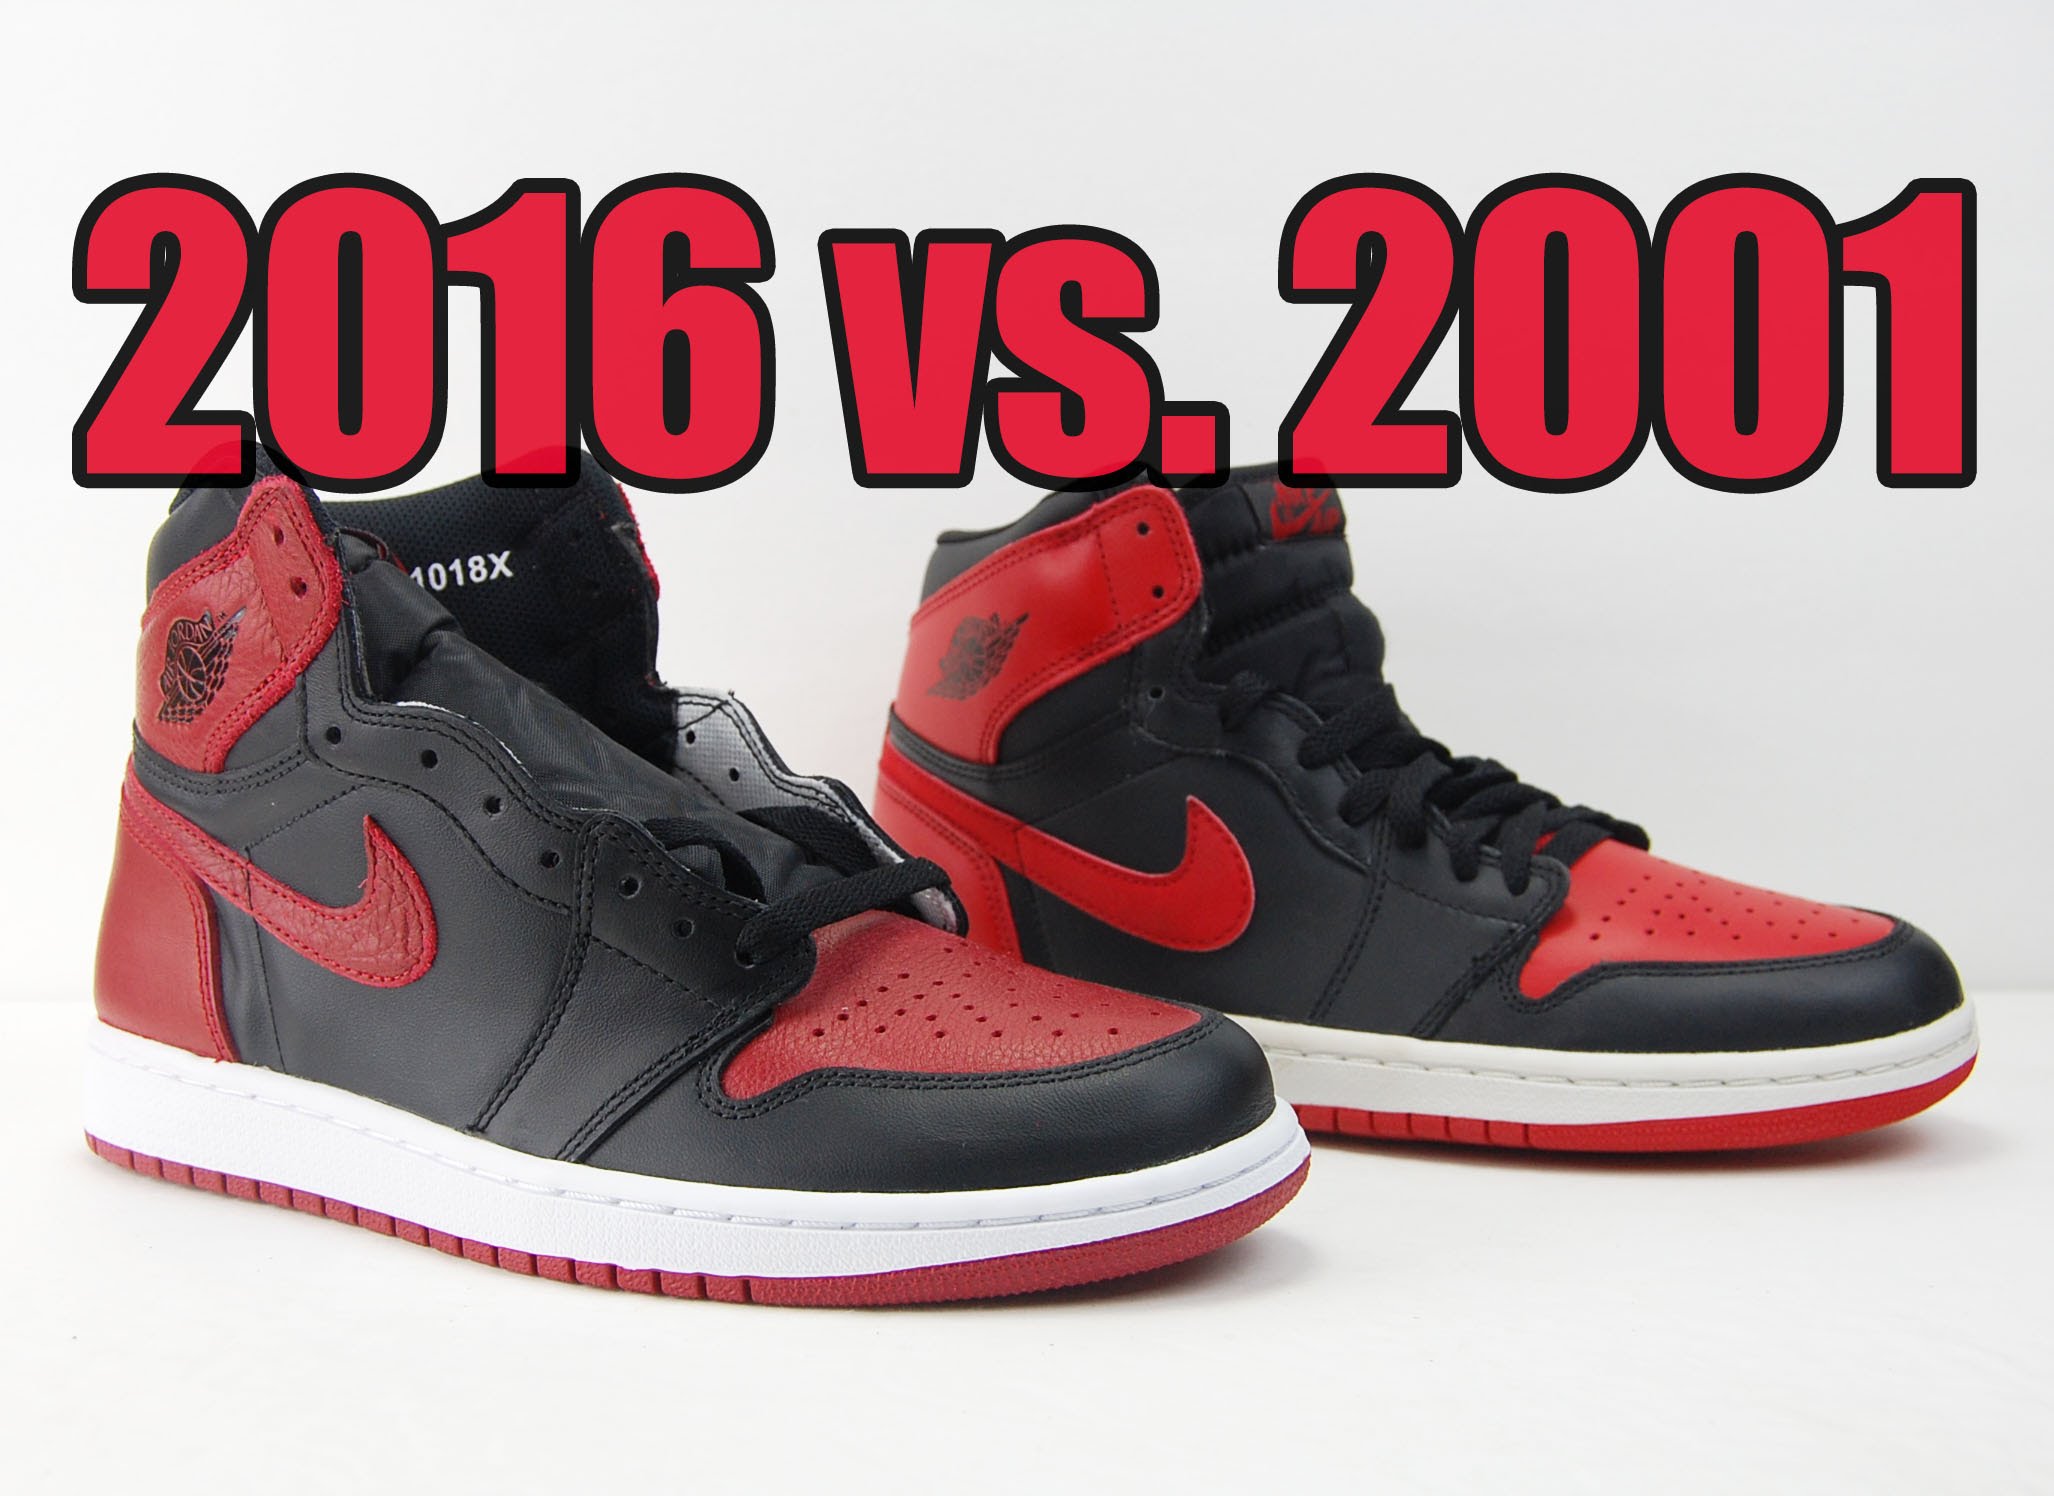 2001 vs. 2016 Air Jordan 1 ‘Bred’ Comparison